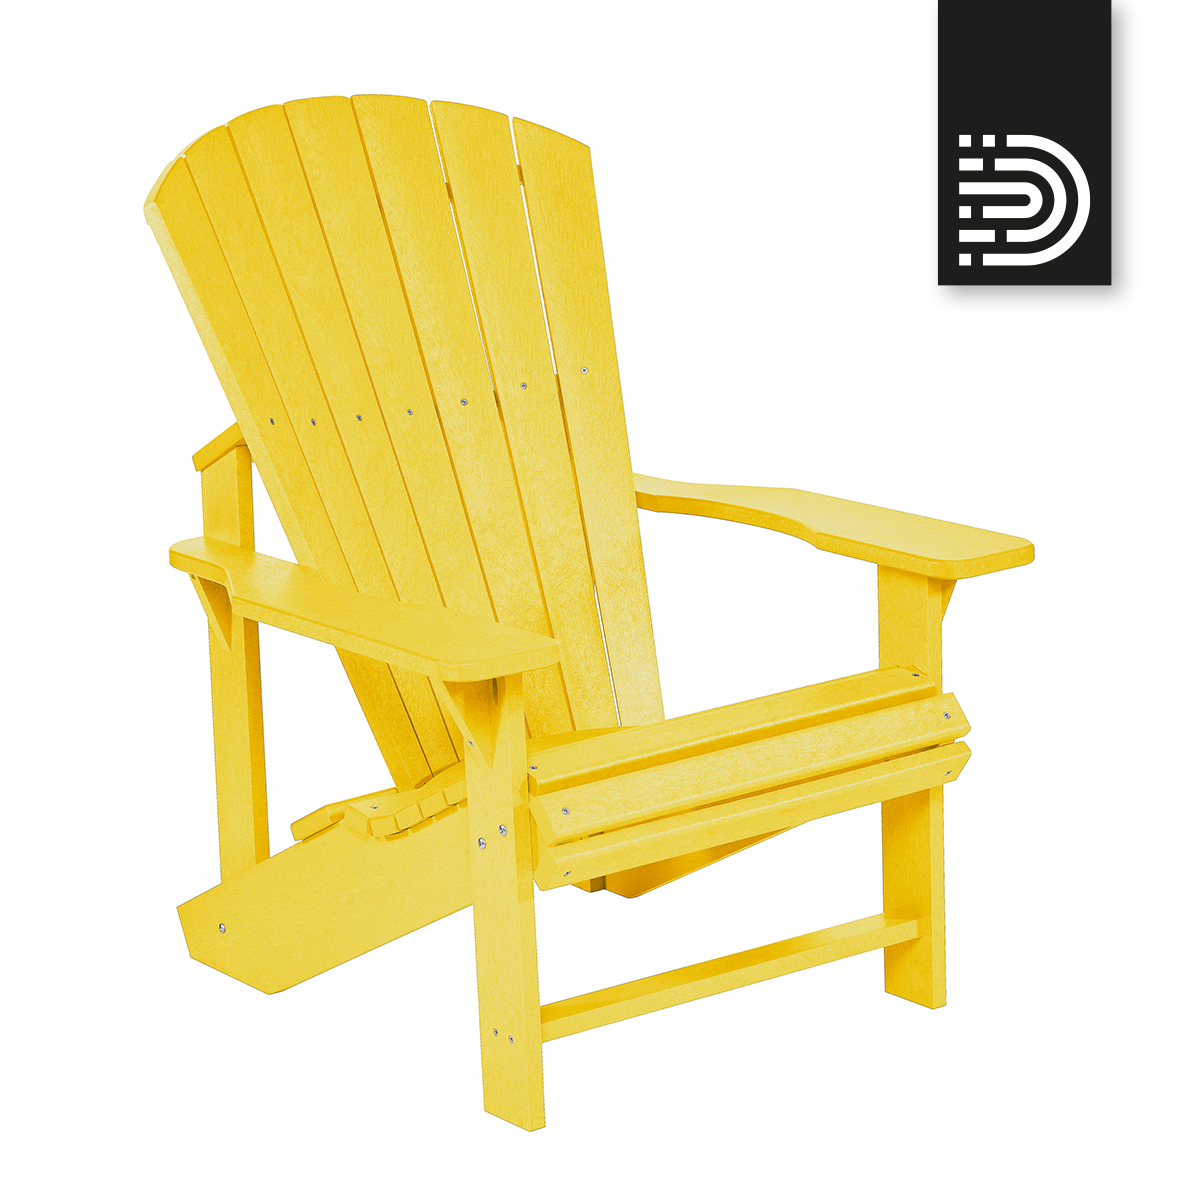  C01 Classic Adirondack Chair - yellow 04